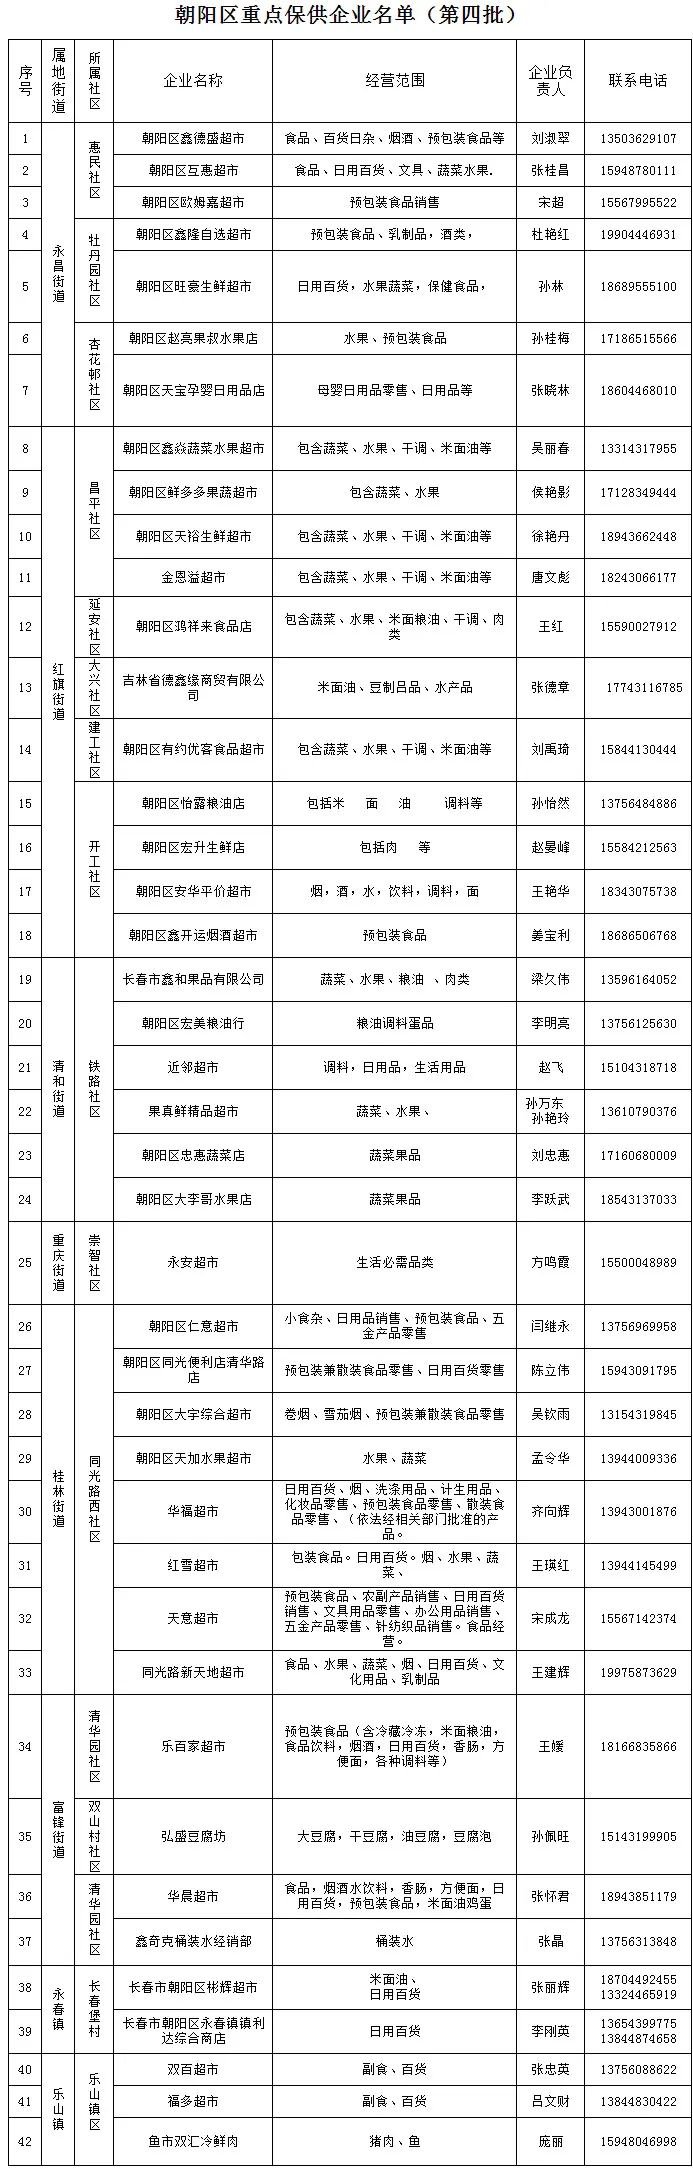 长春市朝阳区第四批保供企业名单